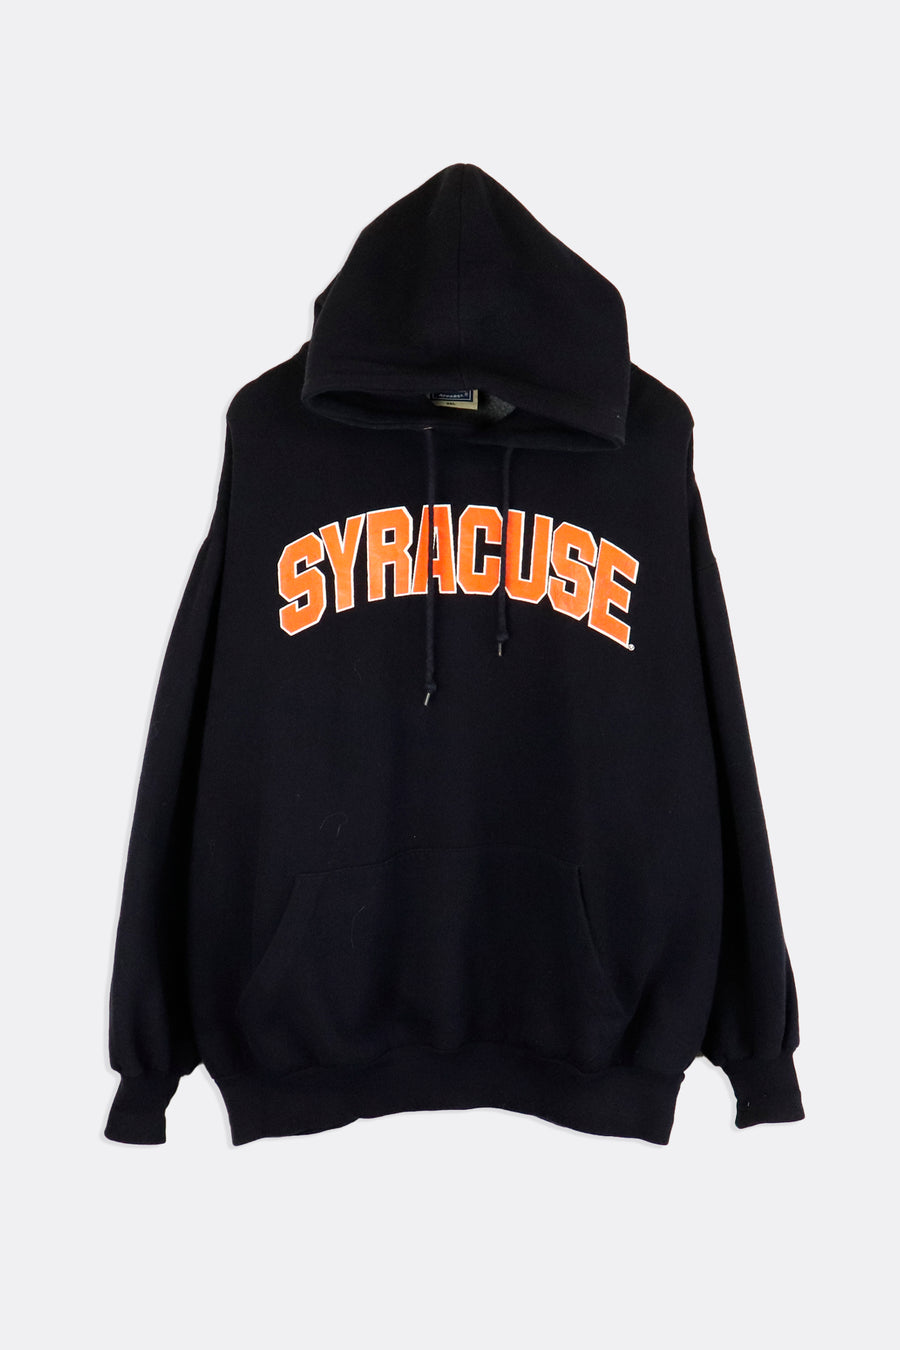 Vintage Syracuse Block Lettering Vinyl Hoodie Sweatshirt Sz 2XL